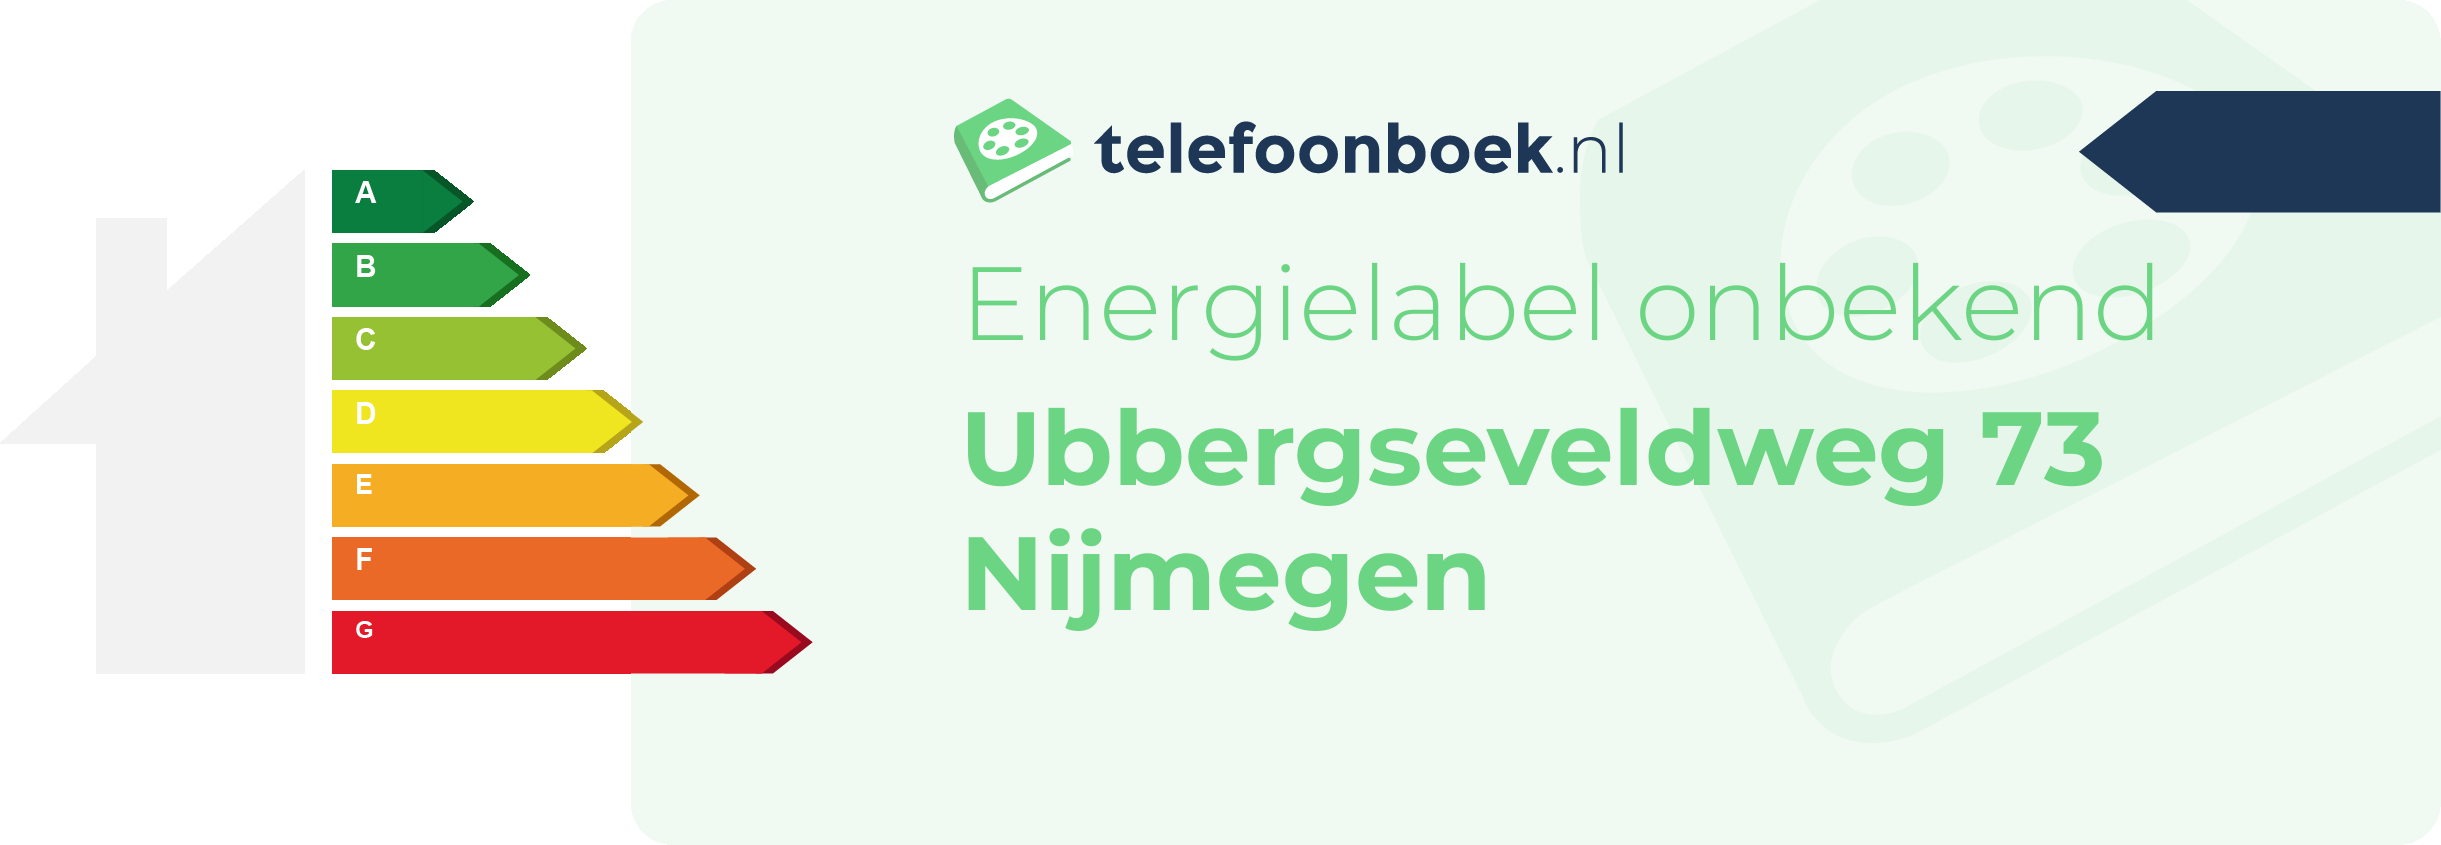 Energielabel Ubbergseveldweg 73 Nijmegen